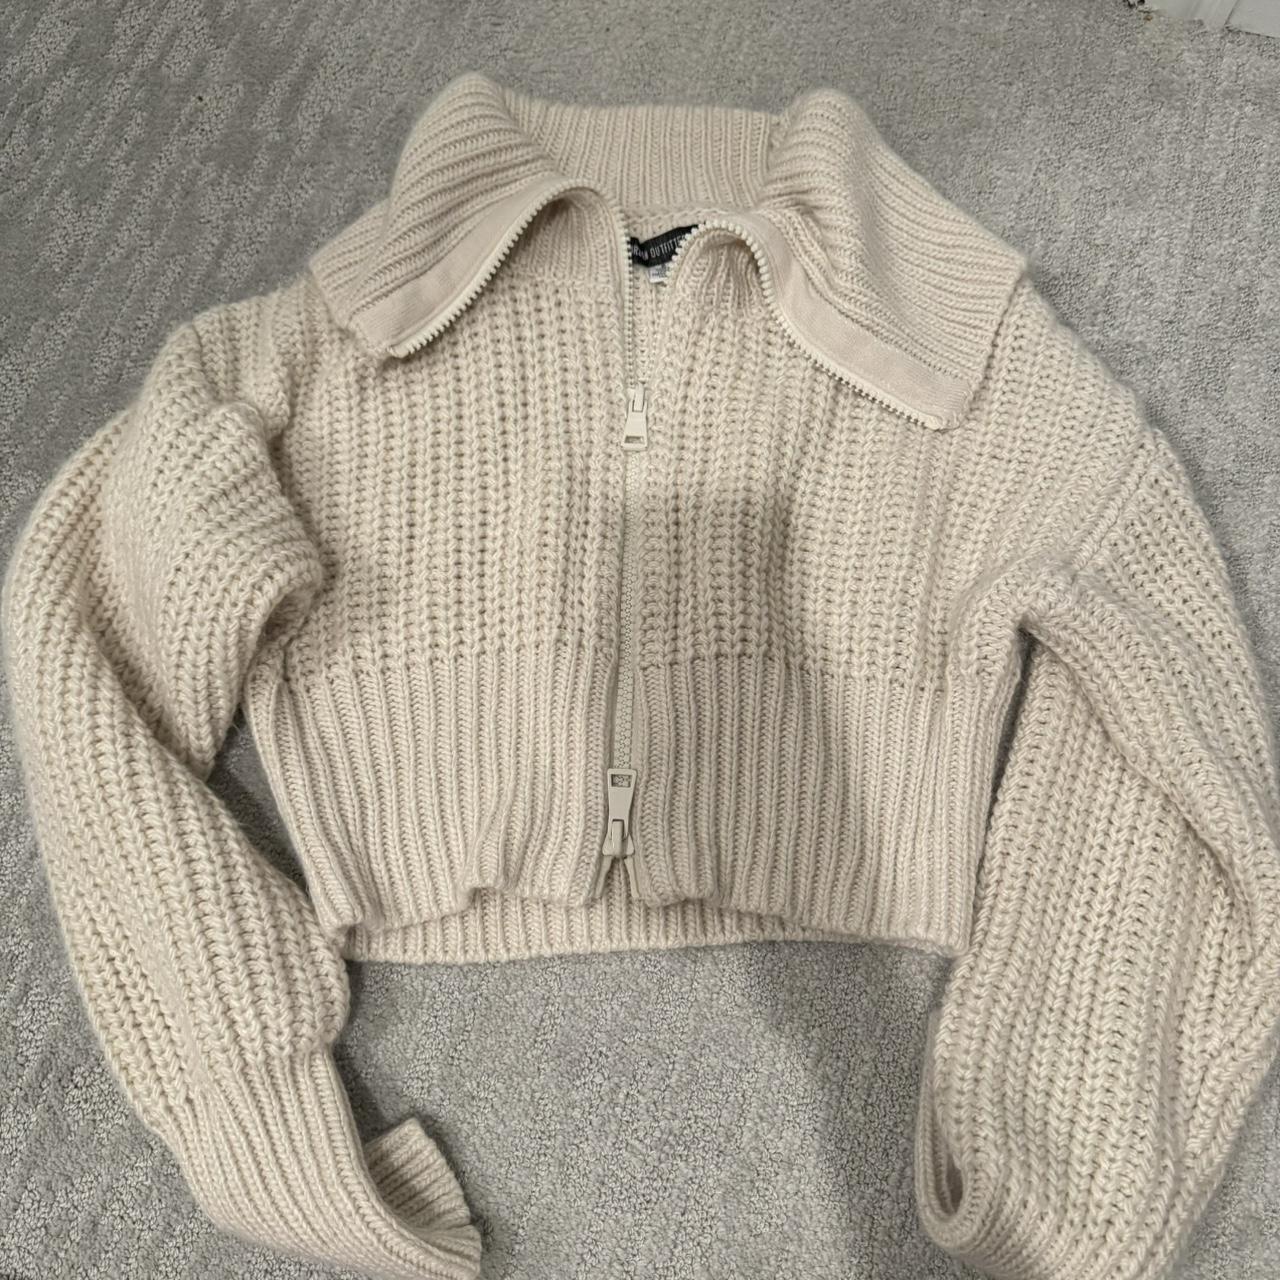 UO zip up Sweater, worn once - Depop